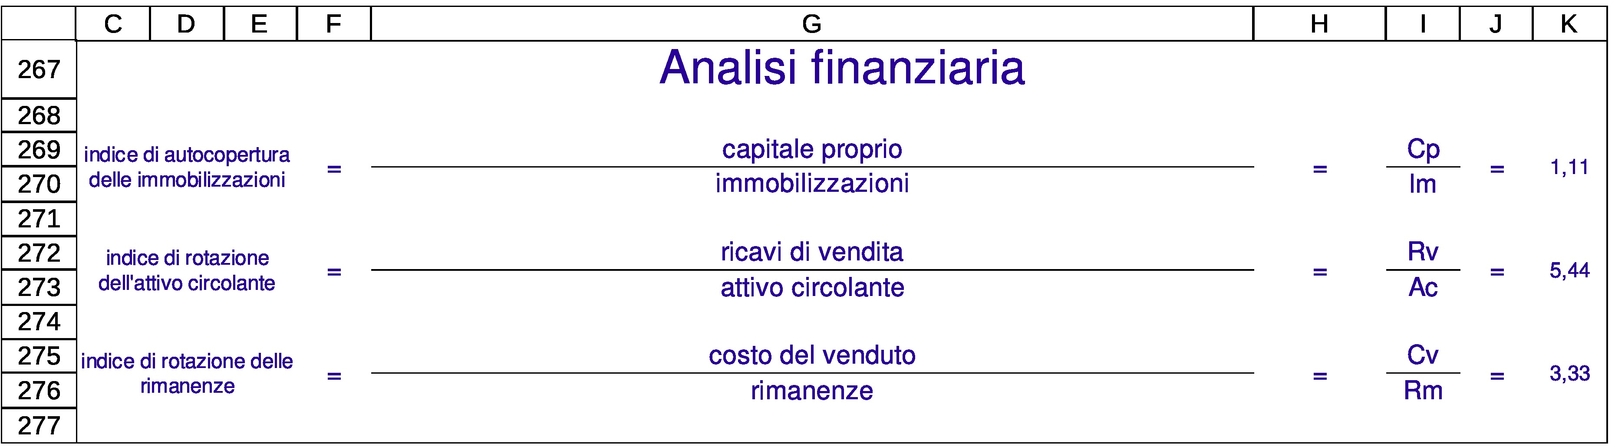 analisi finanziaria